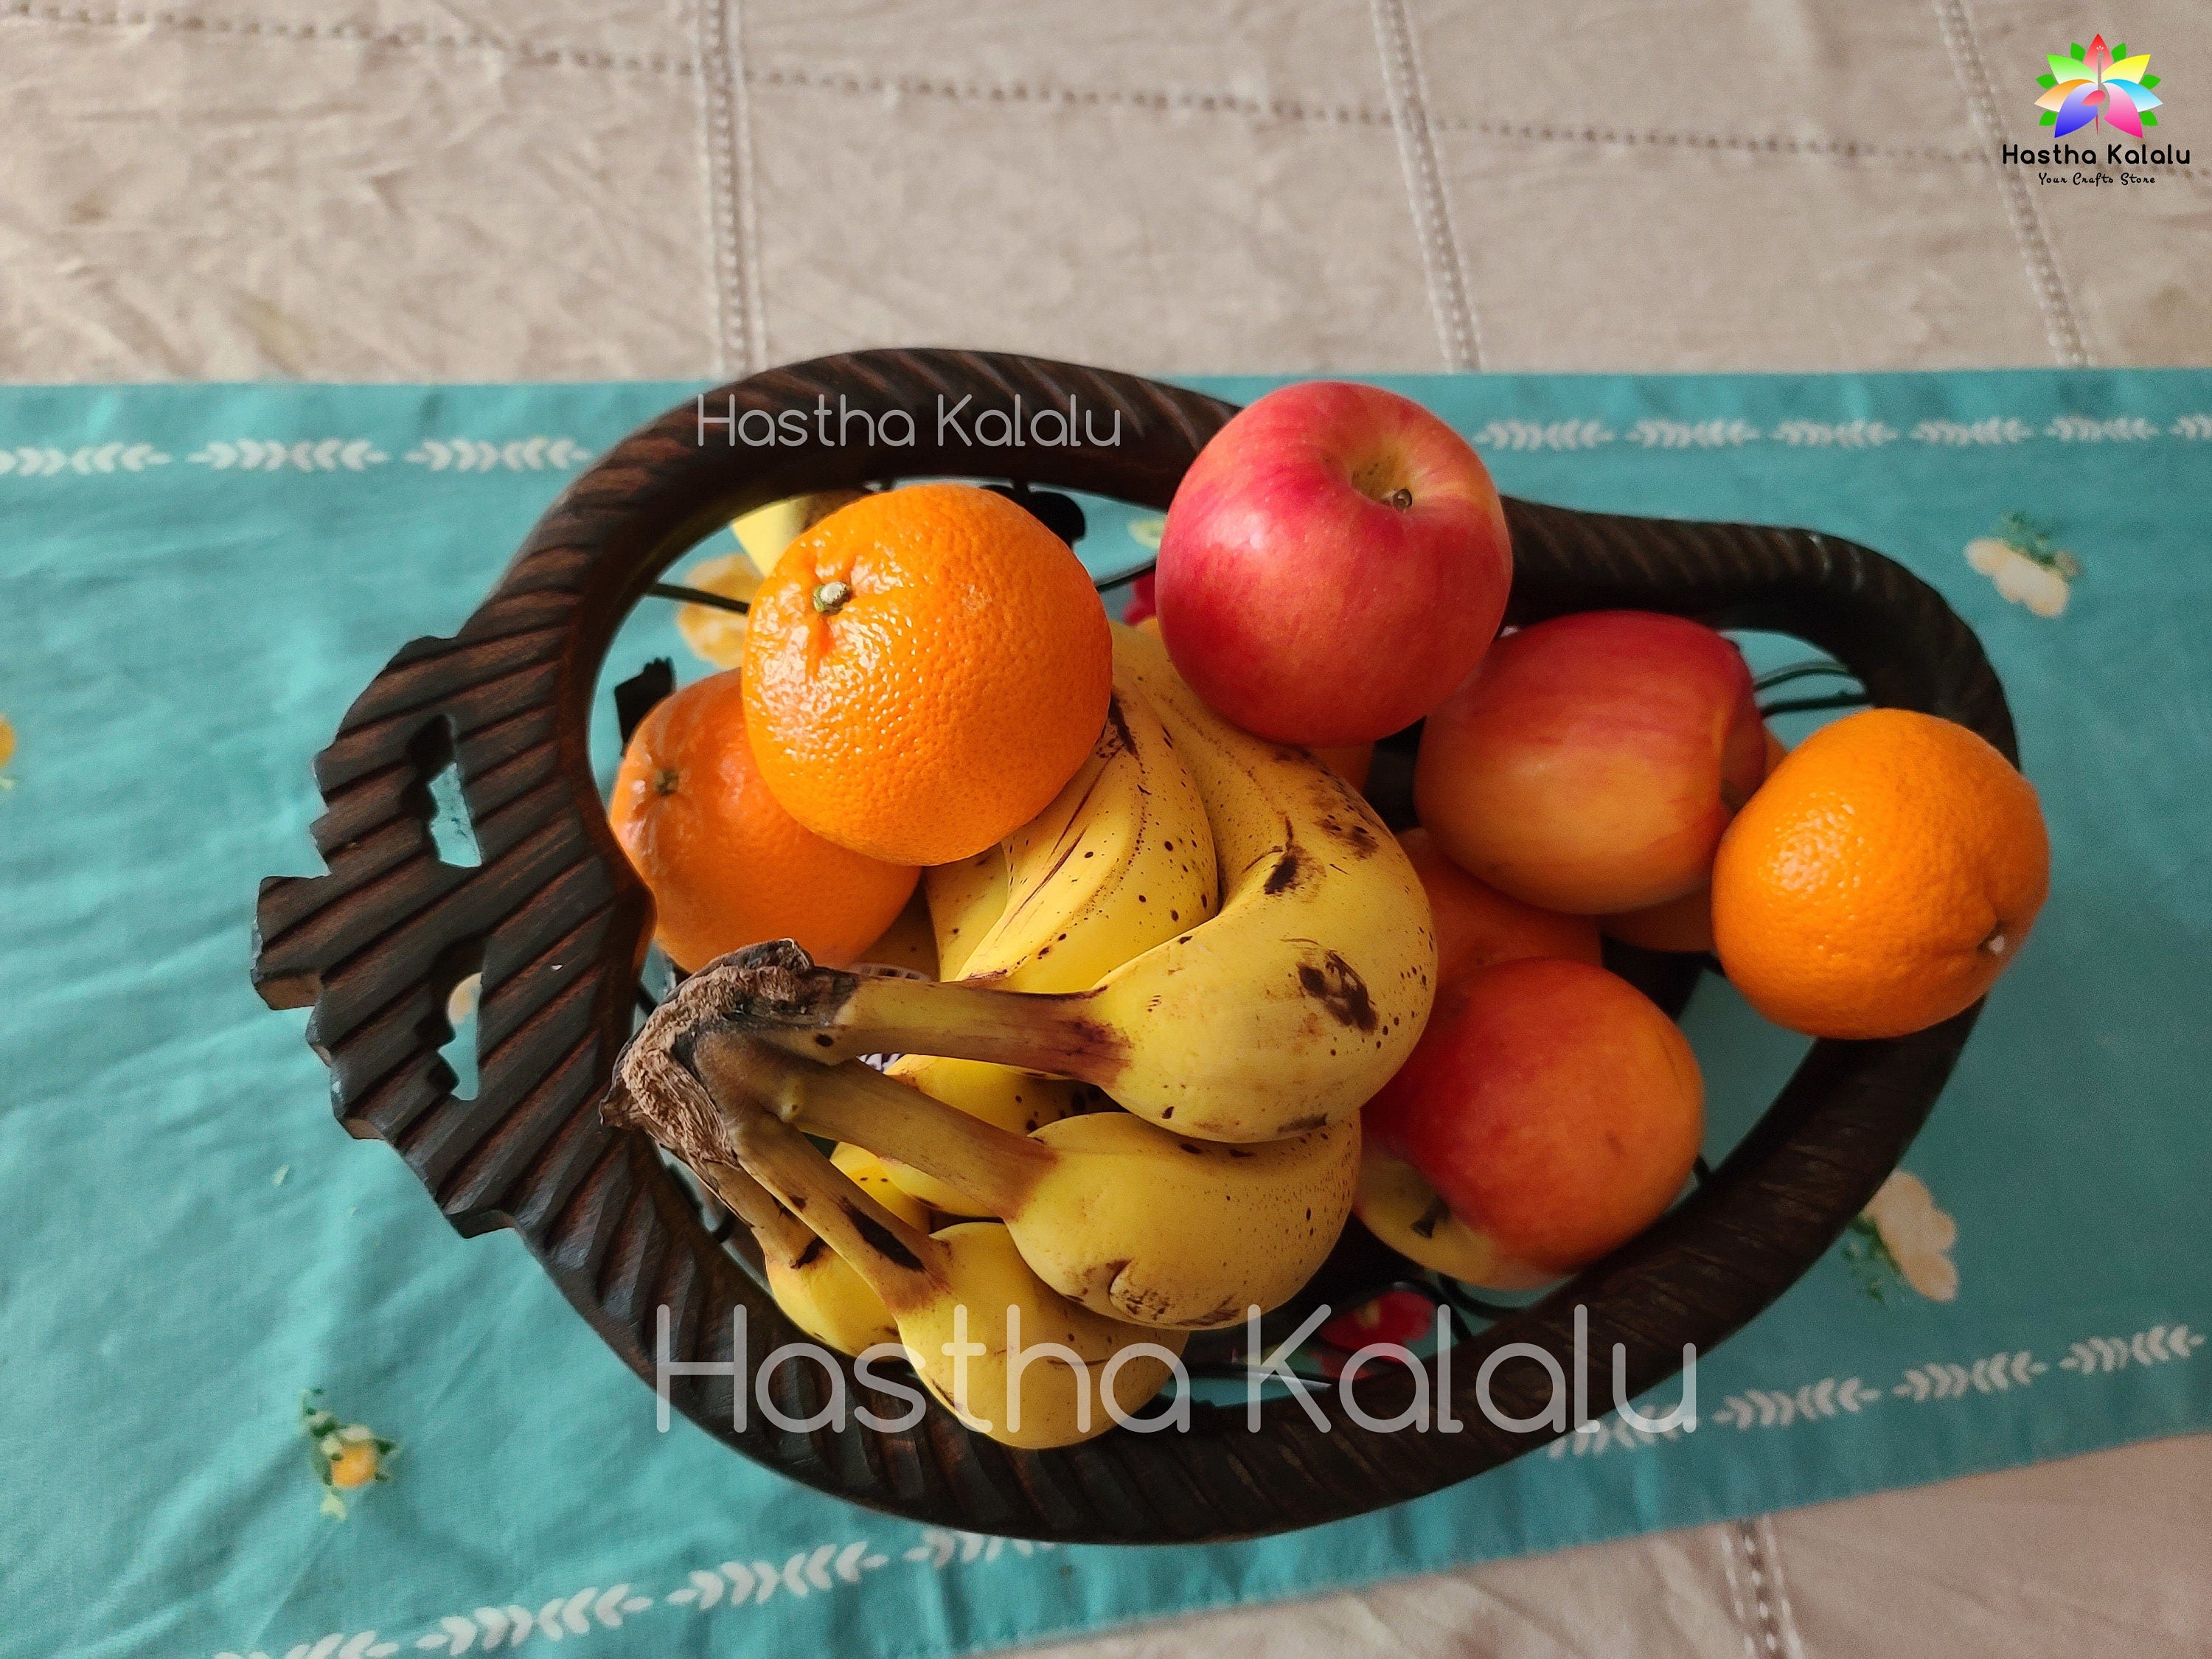 Handmade Wooden-Metallic 15 Inch Long Mango Shaped Fruit Bowl/ Fruit Basket